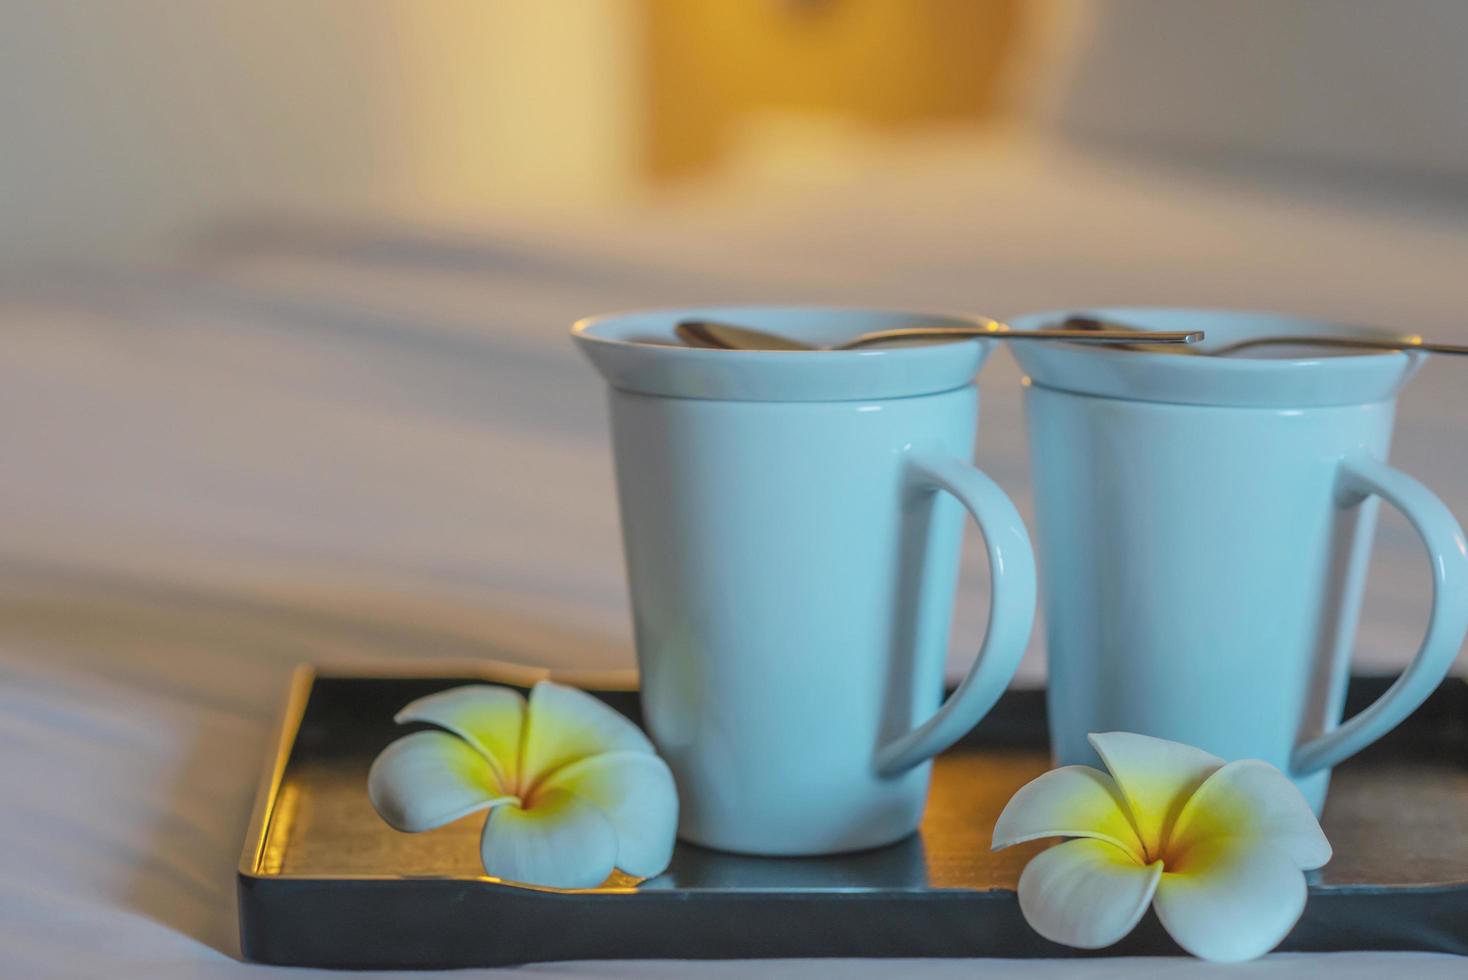 närbild av tvilling välkommen kaffekopp på vit säng i hotellrum - hotell väl gästfrihet semester resor koncept foto